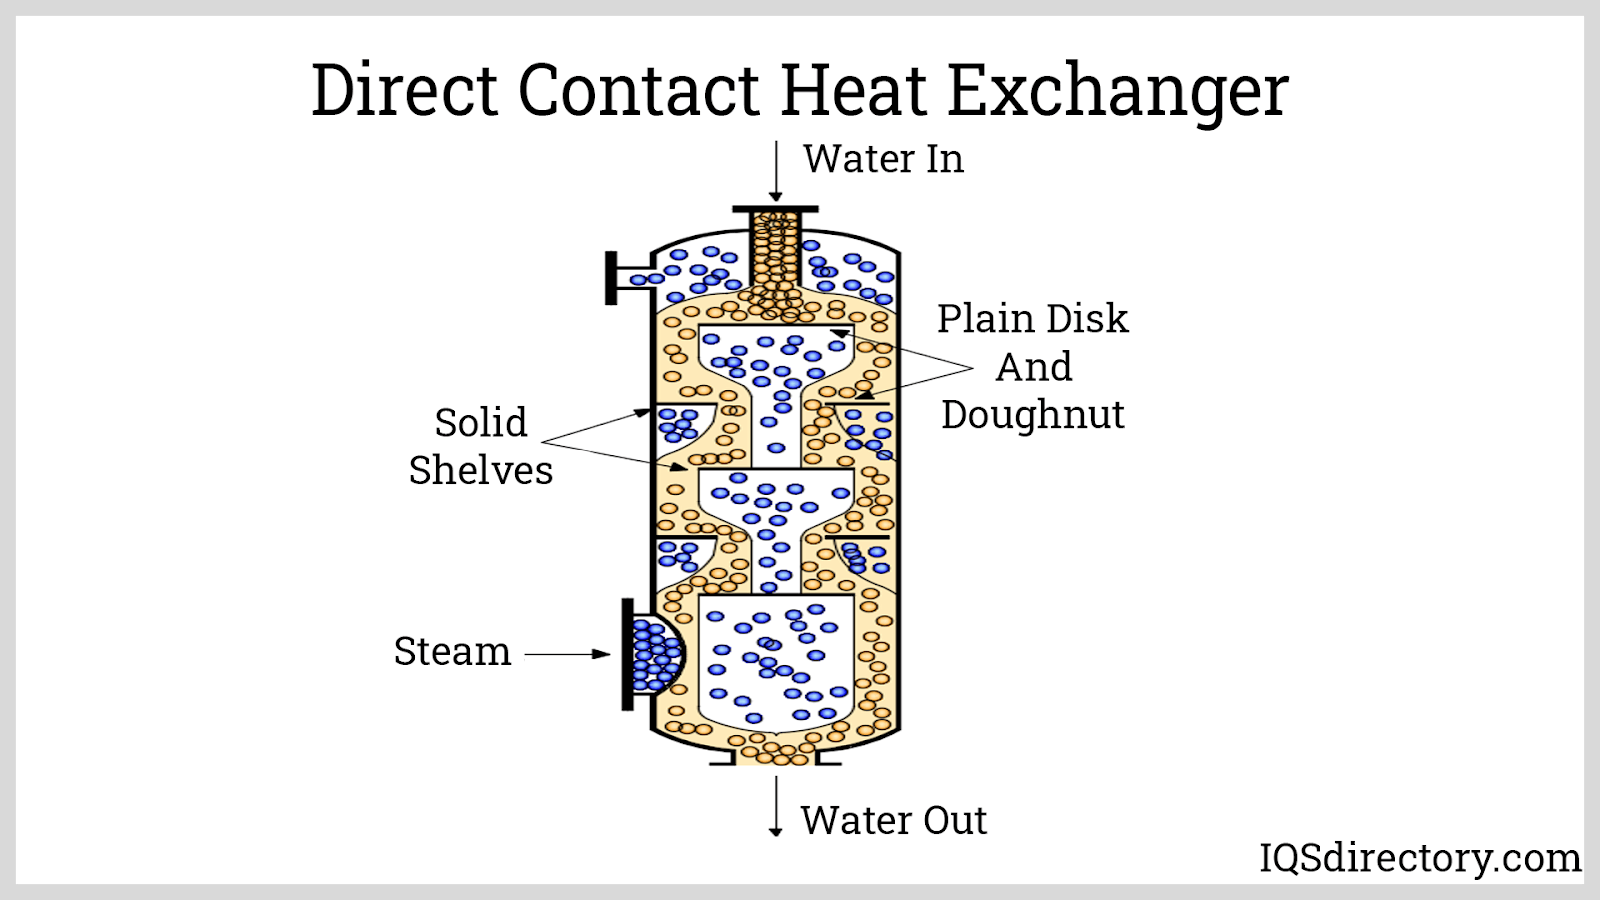 Direct Contact Heat Exchanger